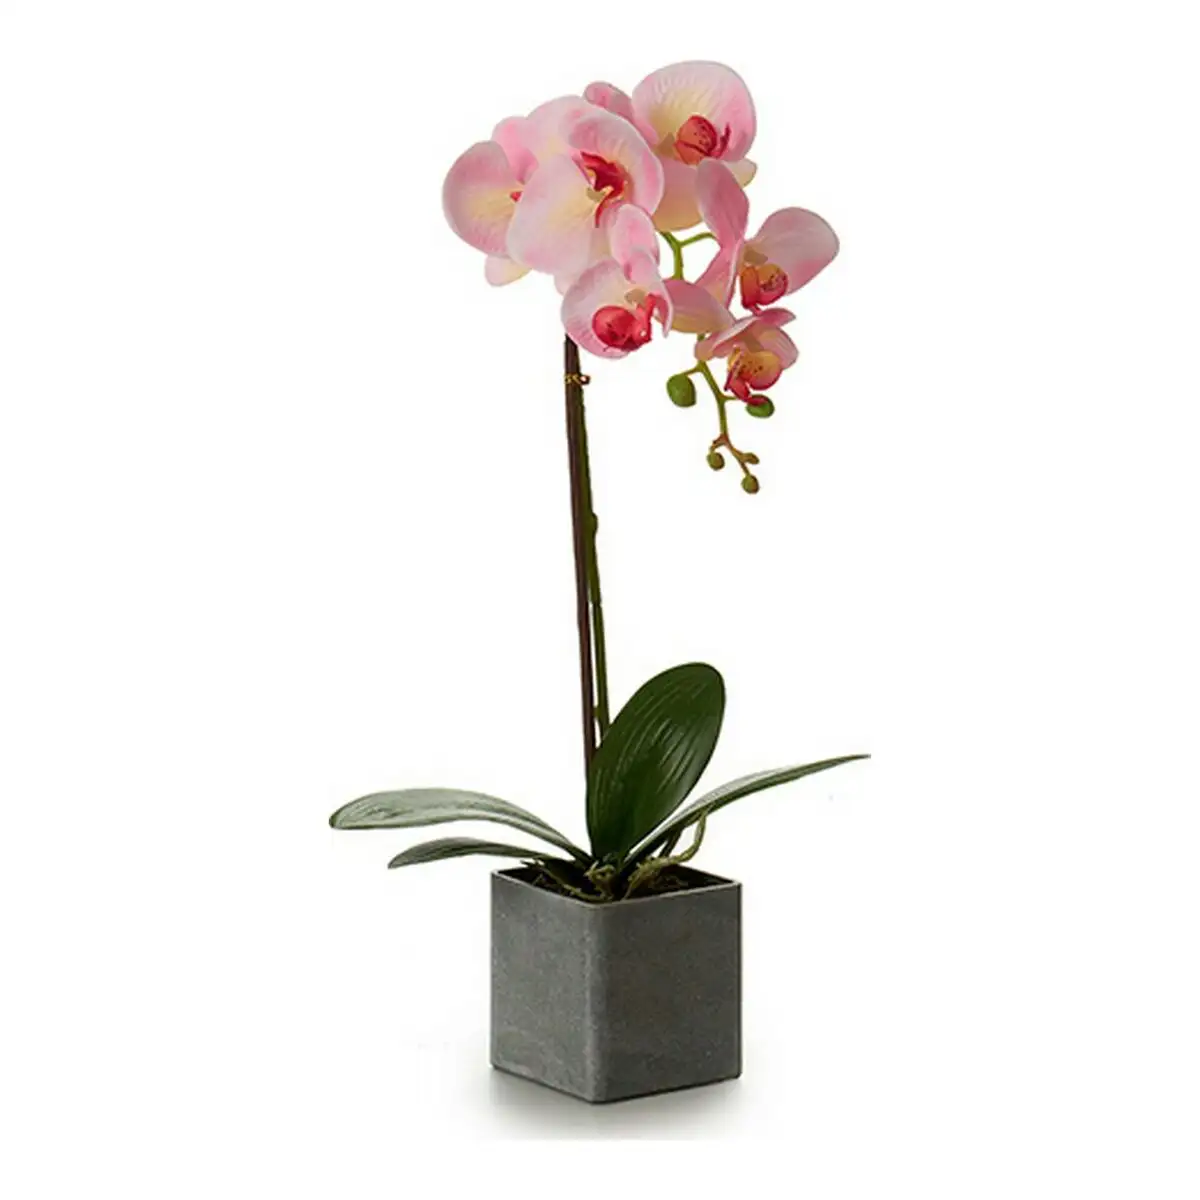 Plante decorative orchidee 15 x 43 x 18 cm plastique_2489. DIAYTAR SENEGAL - Votre Paradis Shopping au Cœur du Sénégal. Explorez notre boutique en ligne et découvrez des produits conçus pour enchanter chaque aspect de votre vie.